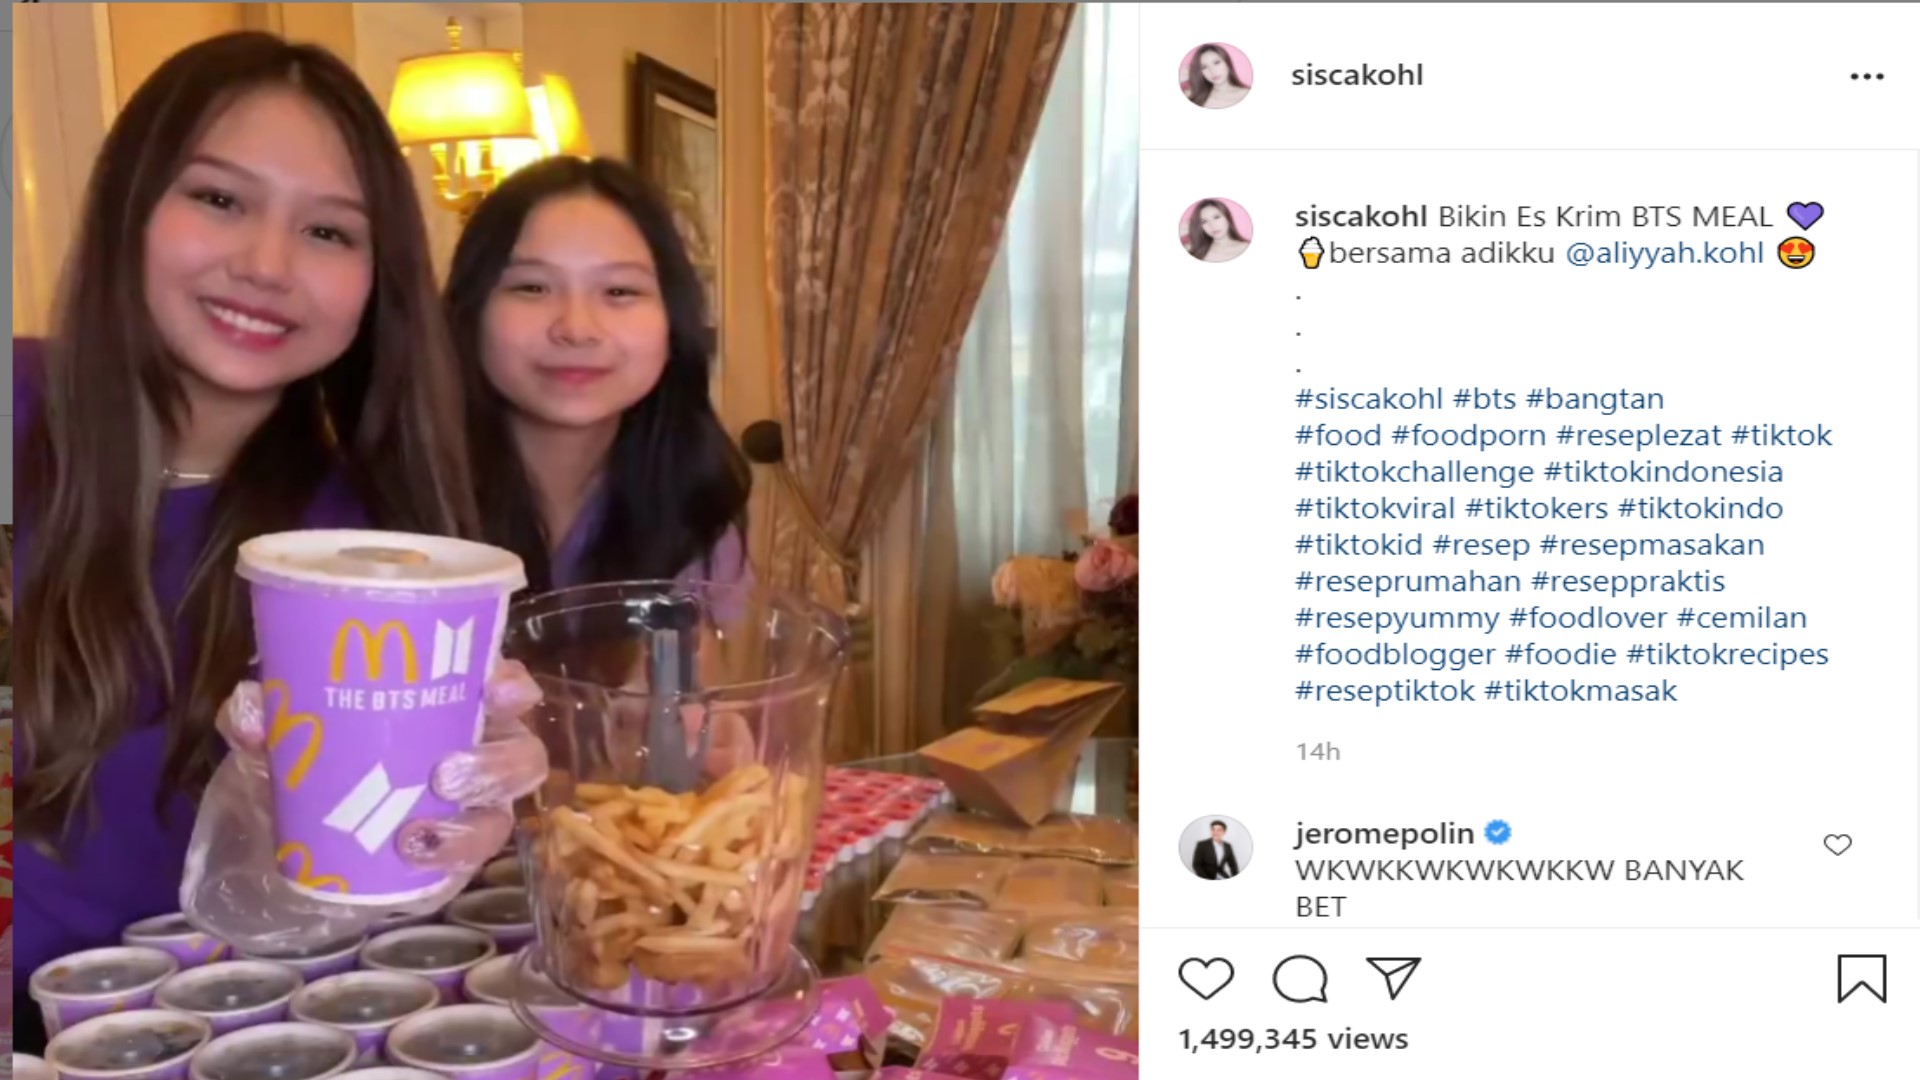 Sisca Kohl Borong Banyak BTS Meal, Netizen : Jangan jangan driver smua tadi pesenan Sisca Kohl